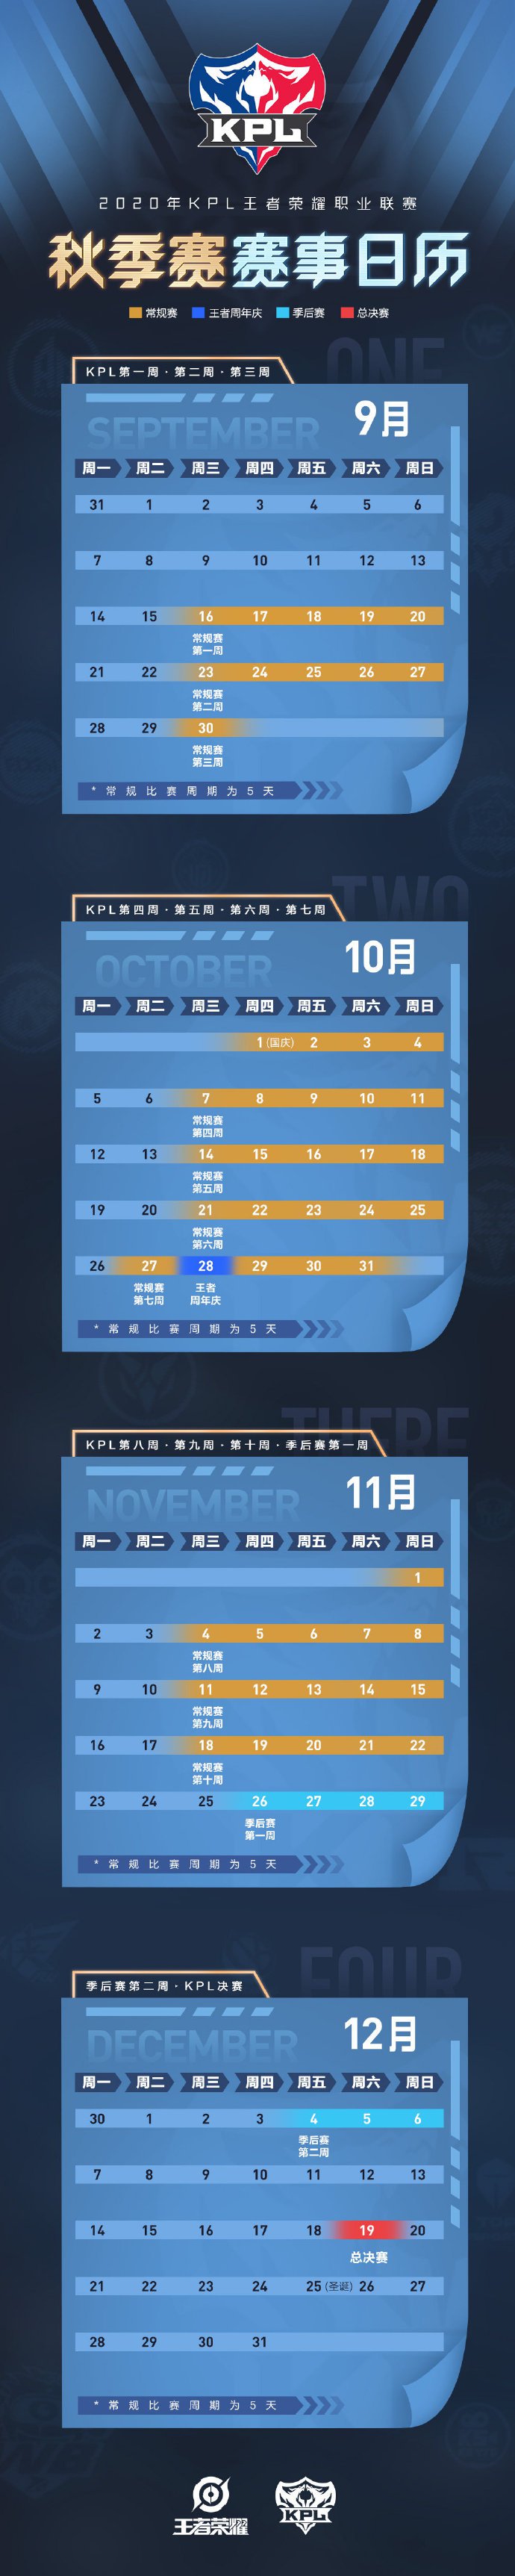 王者荣耀2020KPL职业联赛秋季赛赛程表一览